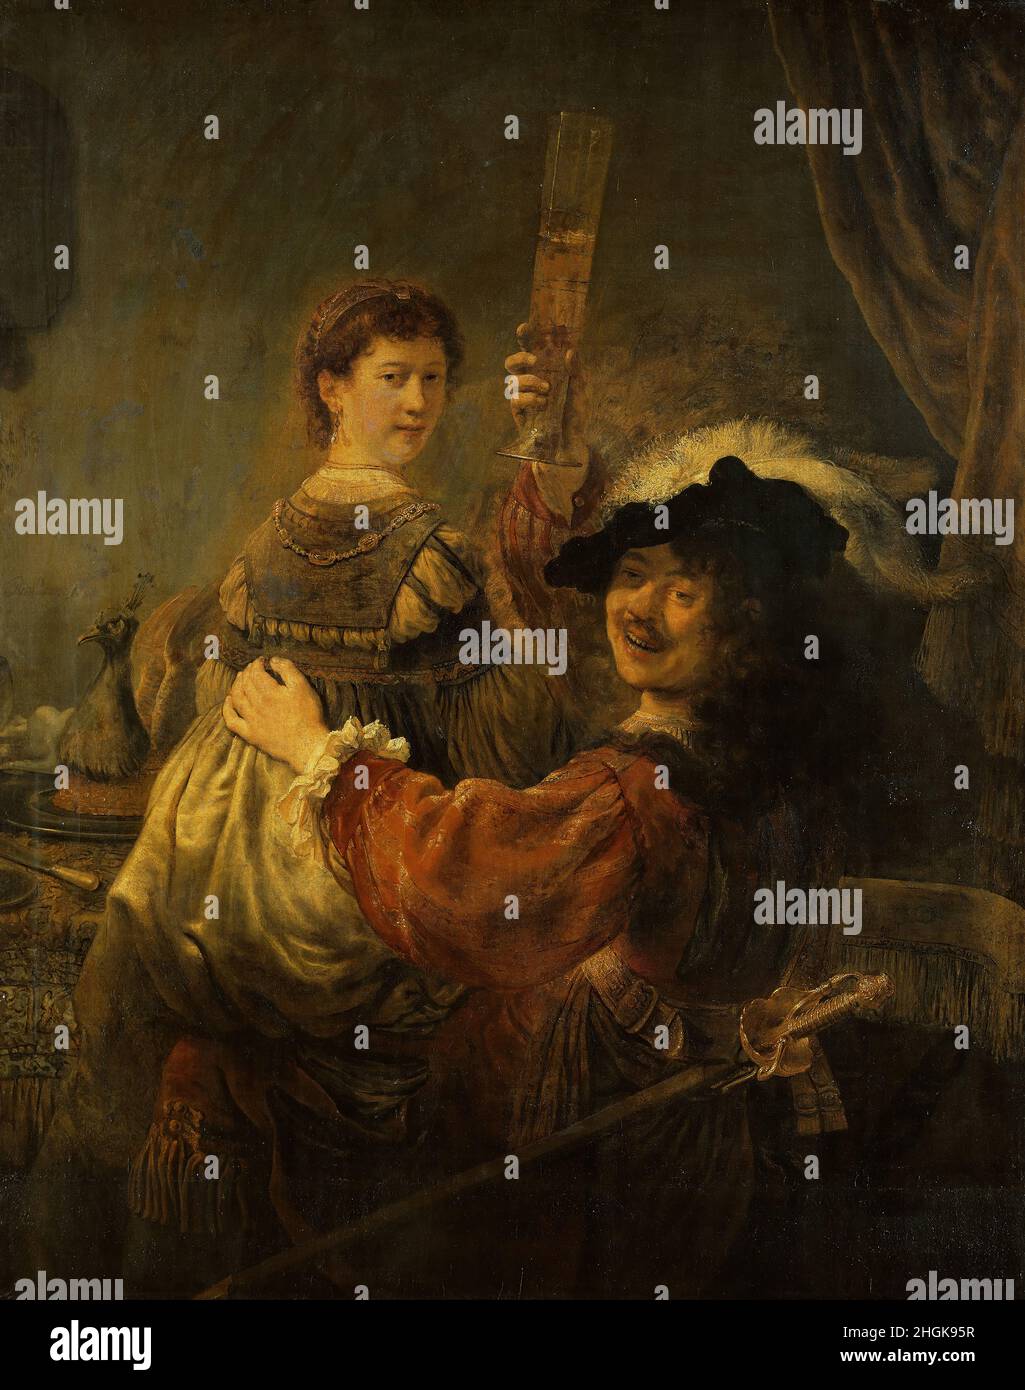 Rembrandt und Saskia im Gleichnis vom verlorenen Sohn - 1635c. - Öl auf Leinwand 161 x 131 cm - Rembrandt Stockfoto